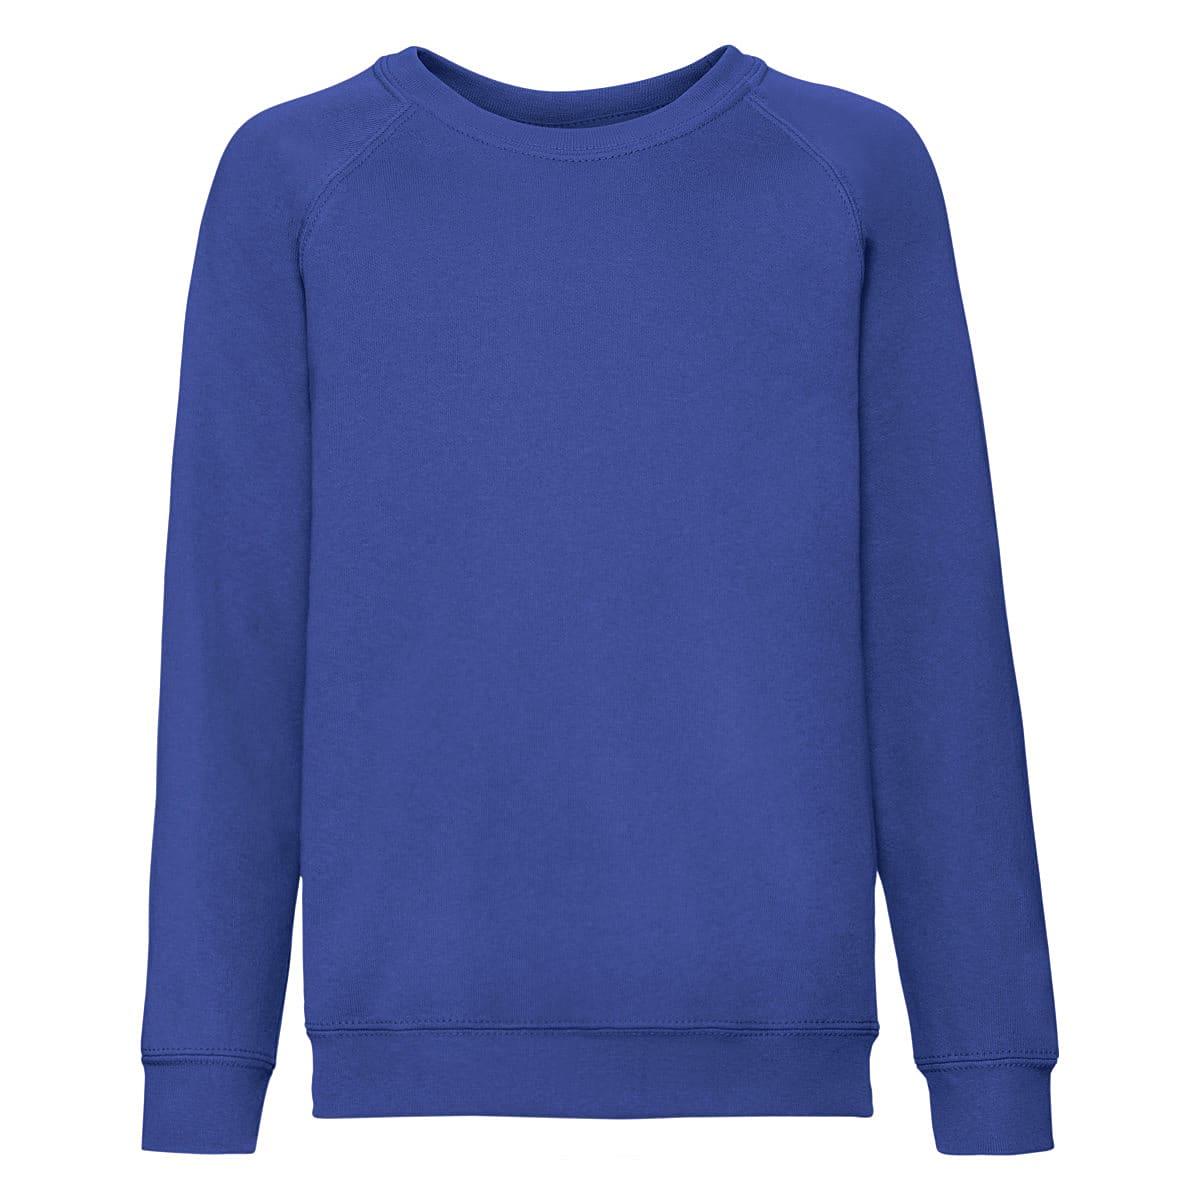 Fruit Of The Loom Childrens Raglan Sleeve Sweatshirt in Royal Blue (Product Code: 62039)